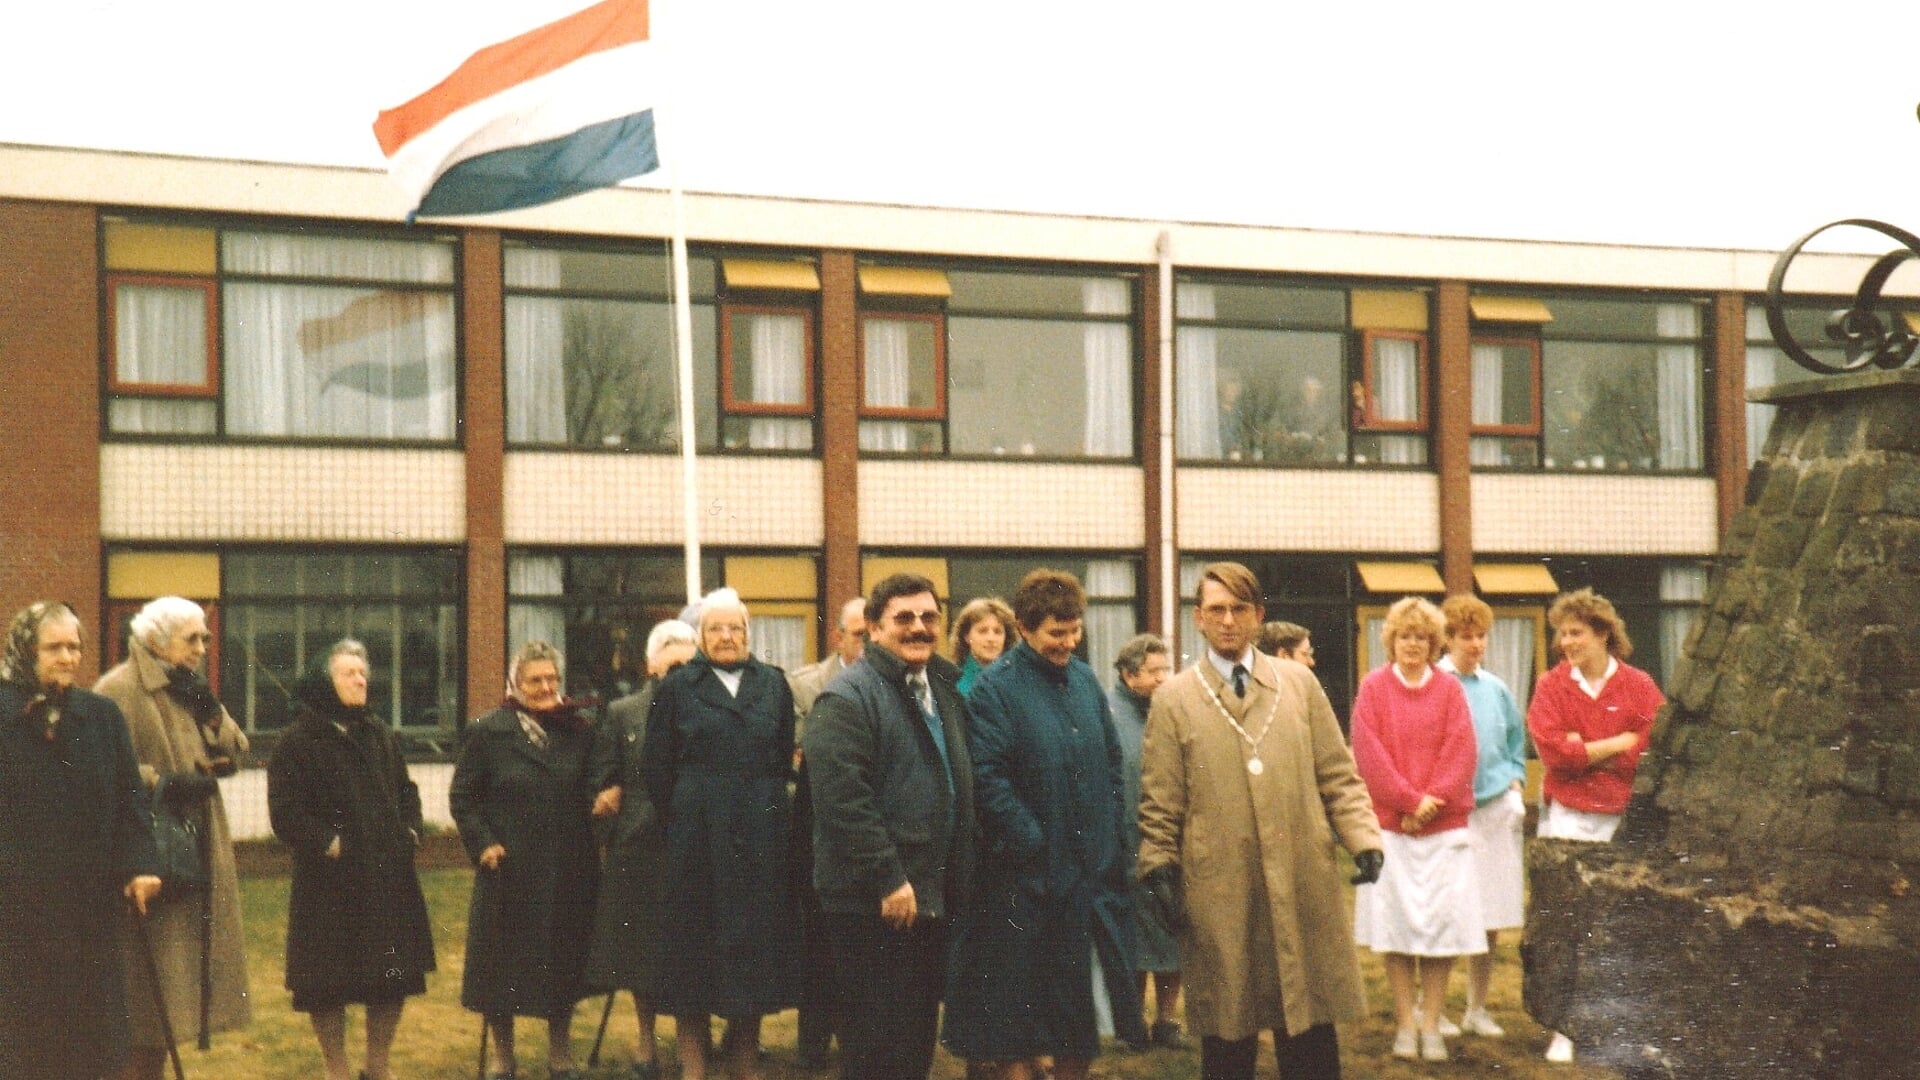 Het startschot voor de tweede nieuwbouw de Zonnekamp in Zelhem, 1986. Foto: collectie D. Veldhorst